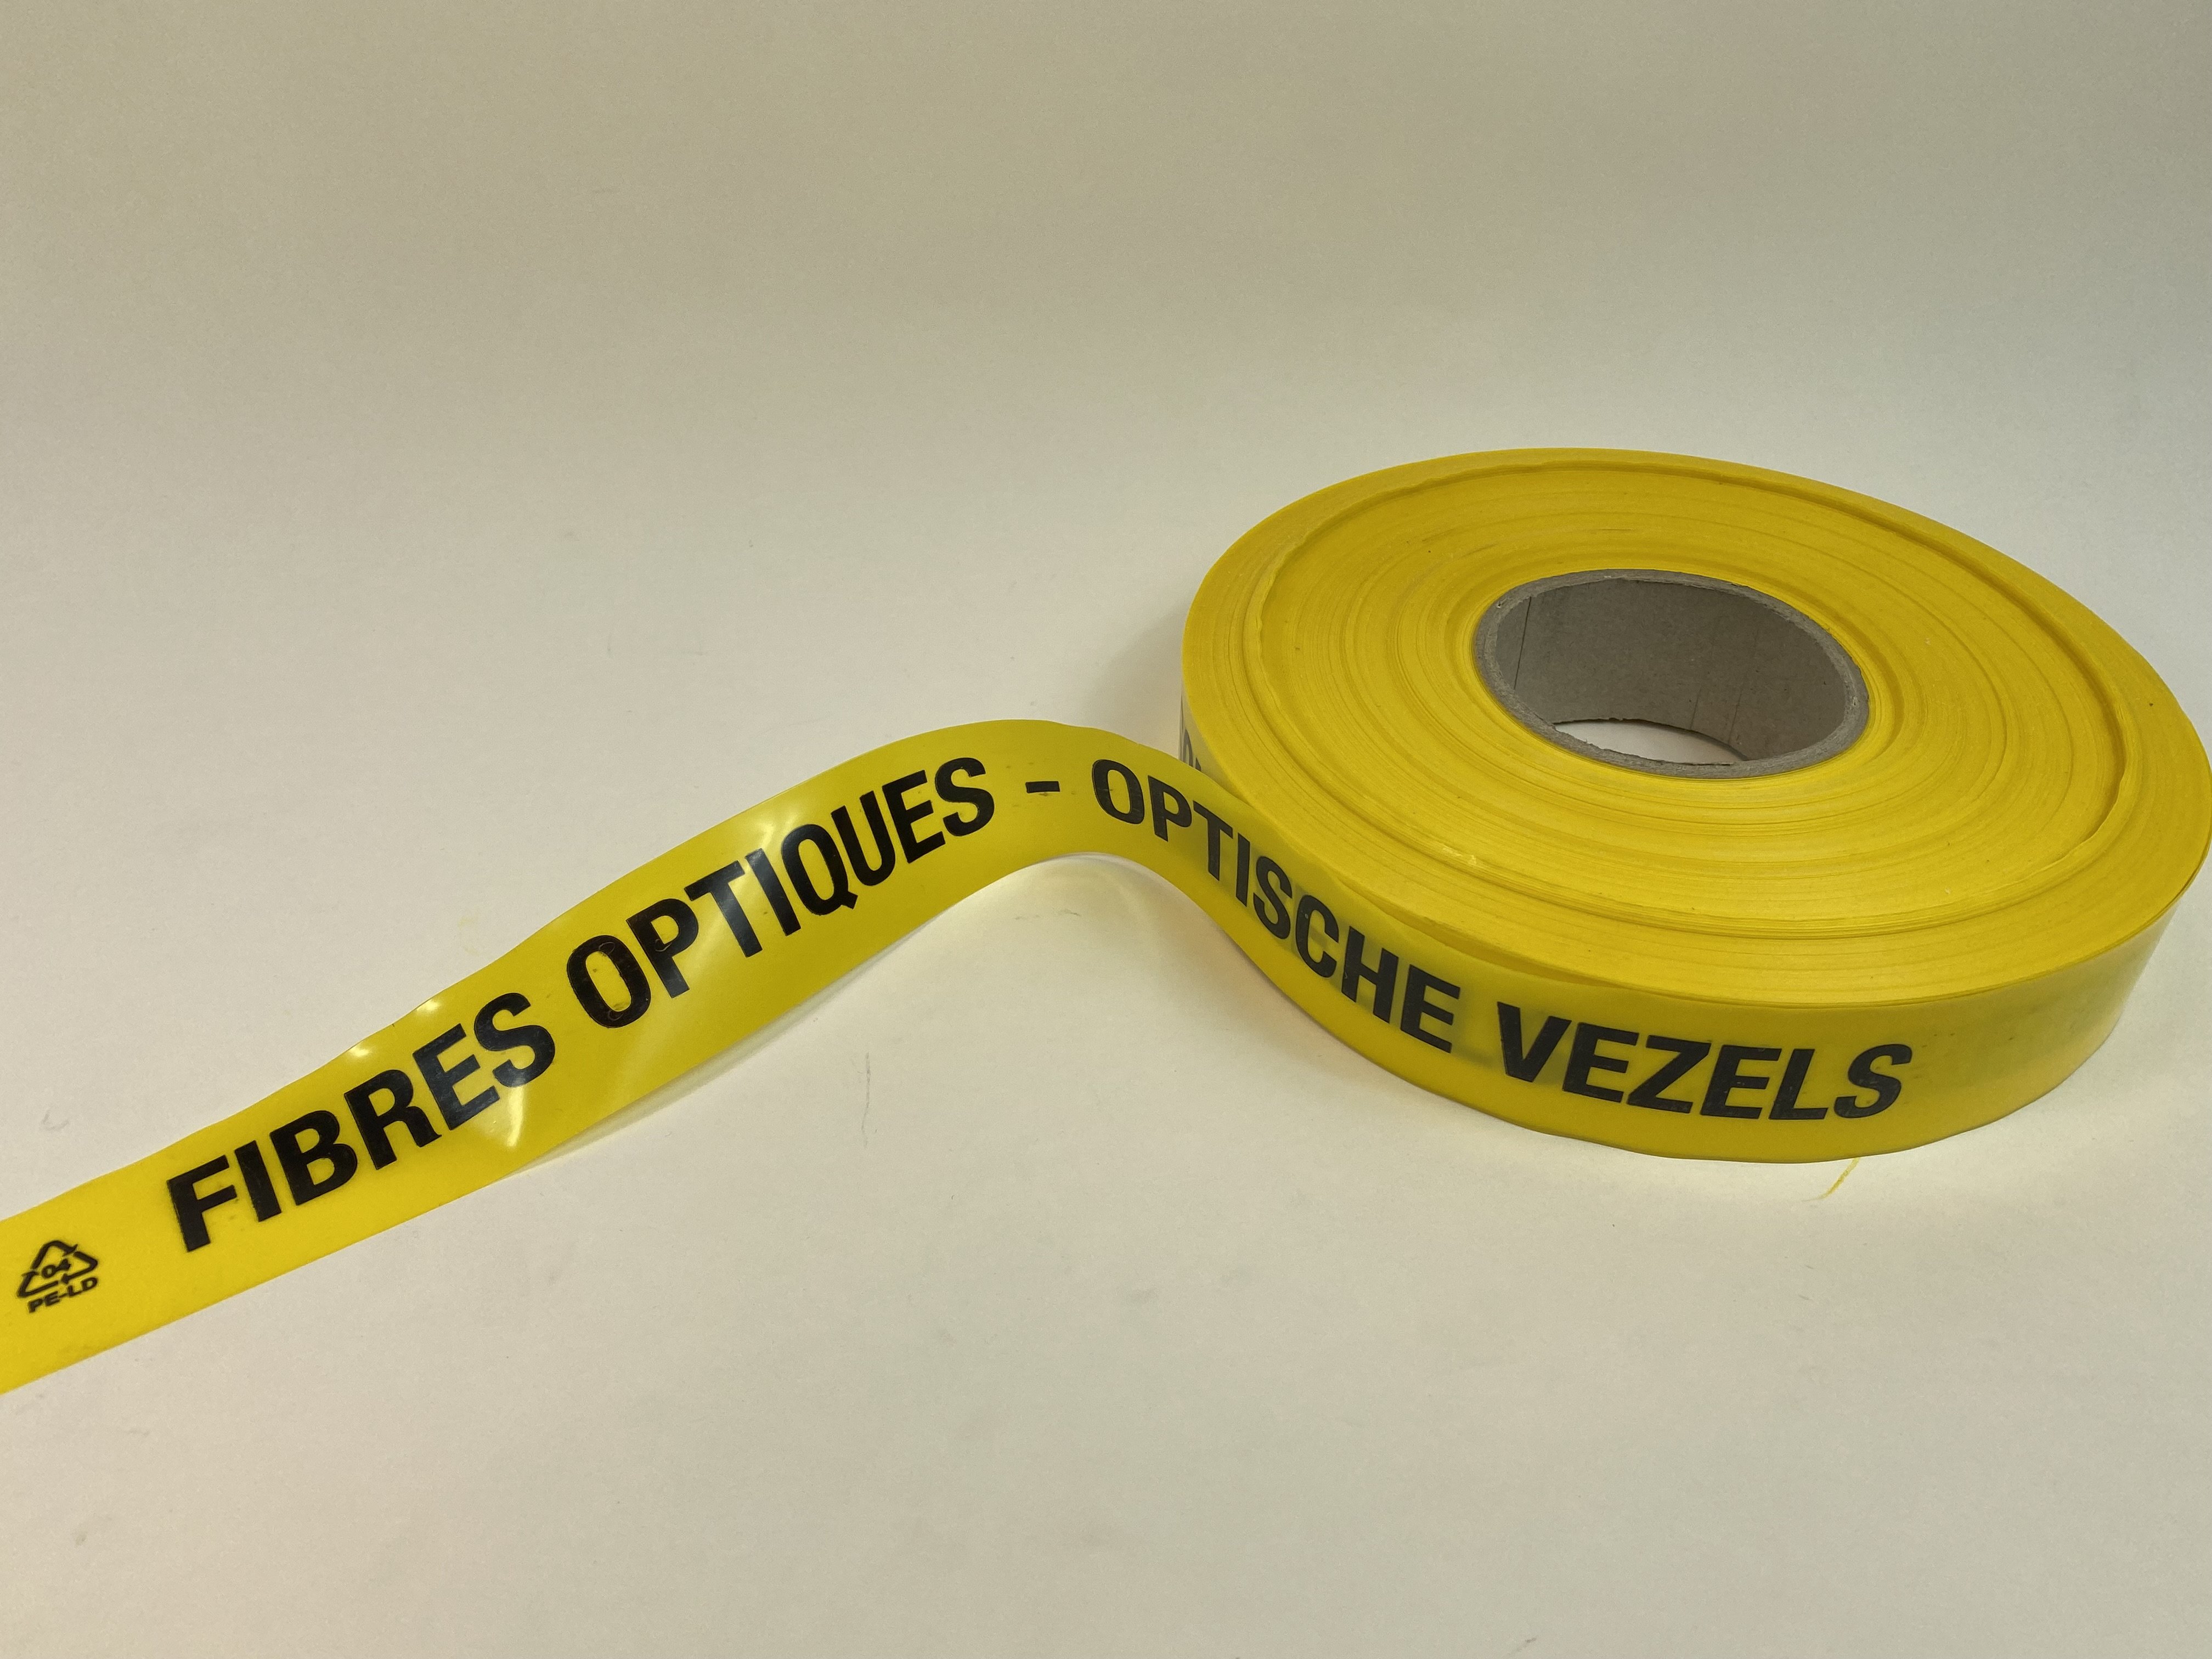 Waarschuwingslint   /ROL      
Opdruk: FIBRES OPTIQUES -     
OPTISCHE VEZELS               
breedte 40mm - dikte 0,15mm   
Kleur: geel - opdruk zwart    
250m/rol